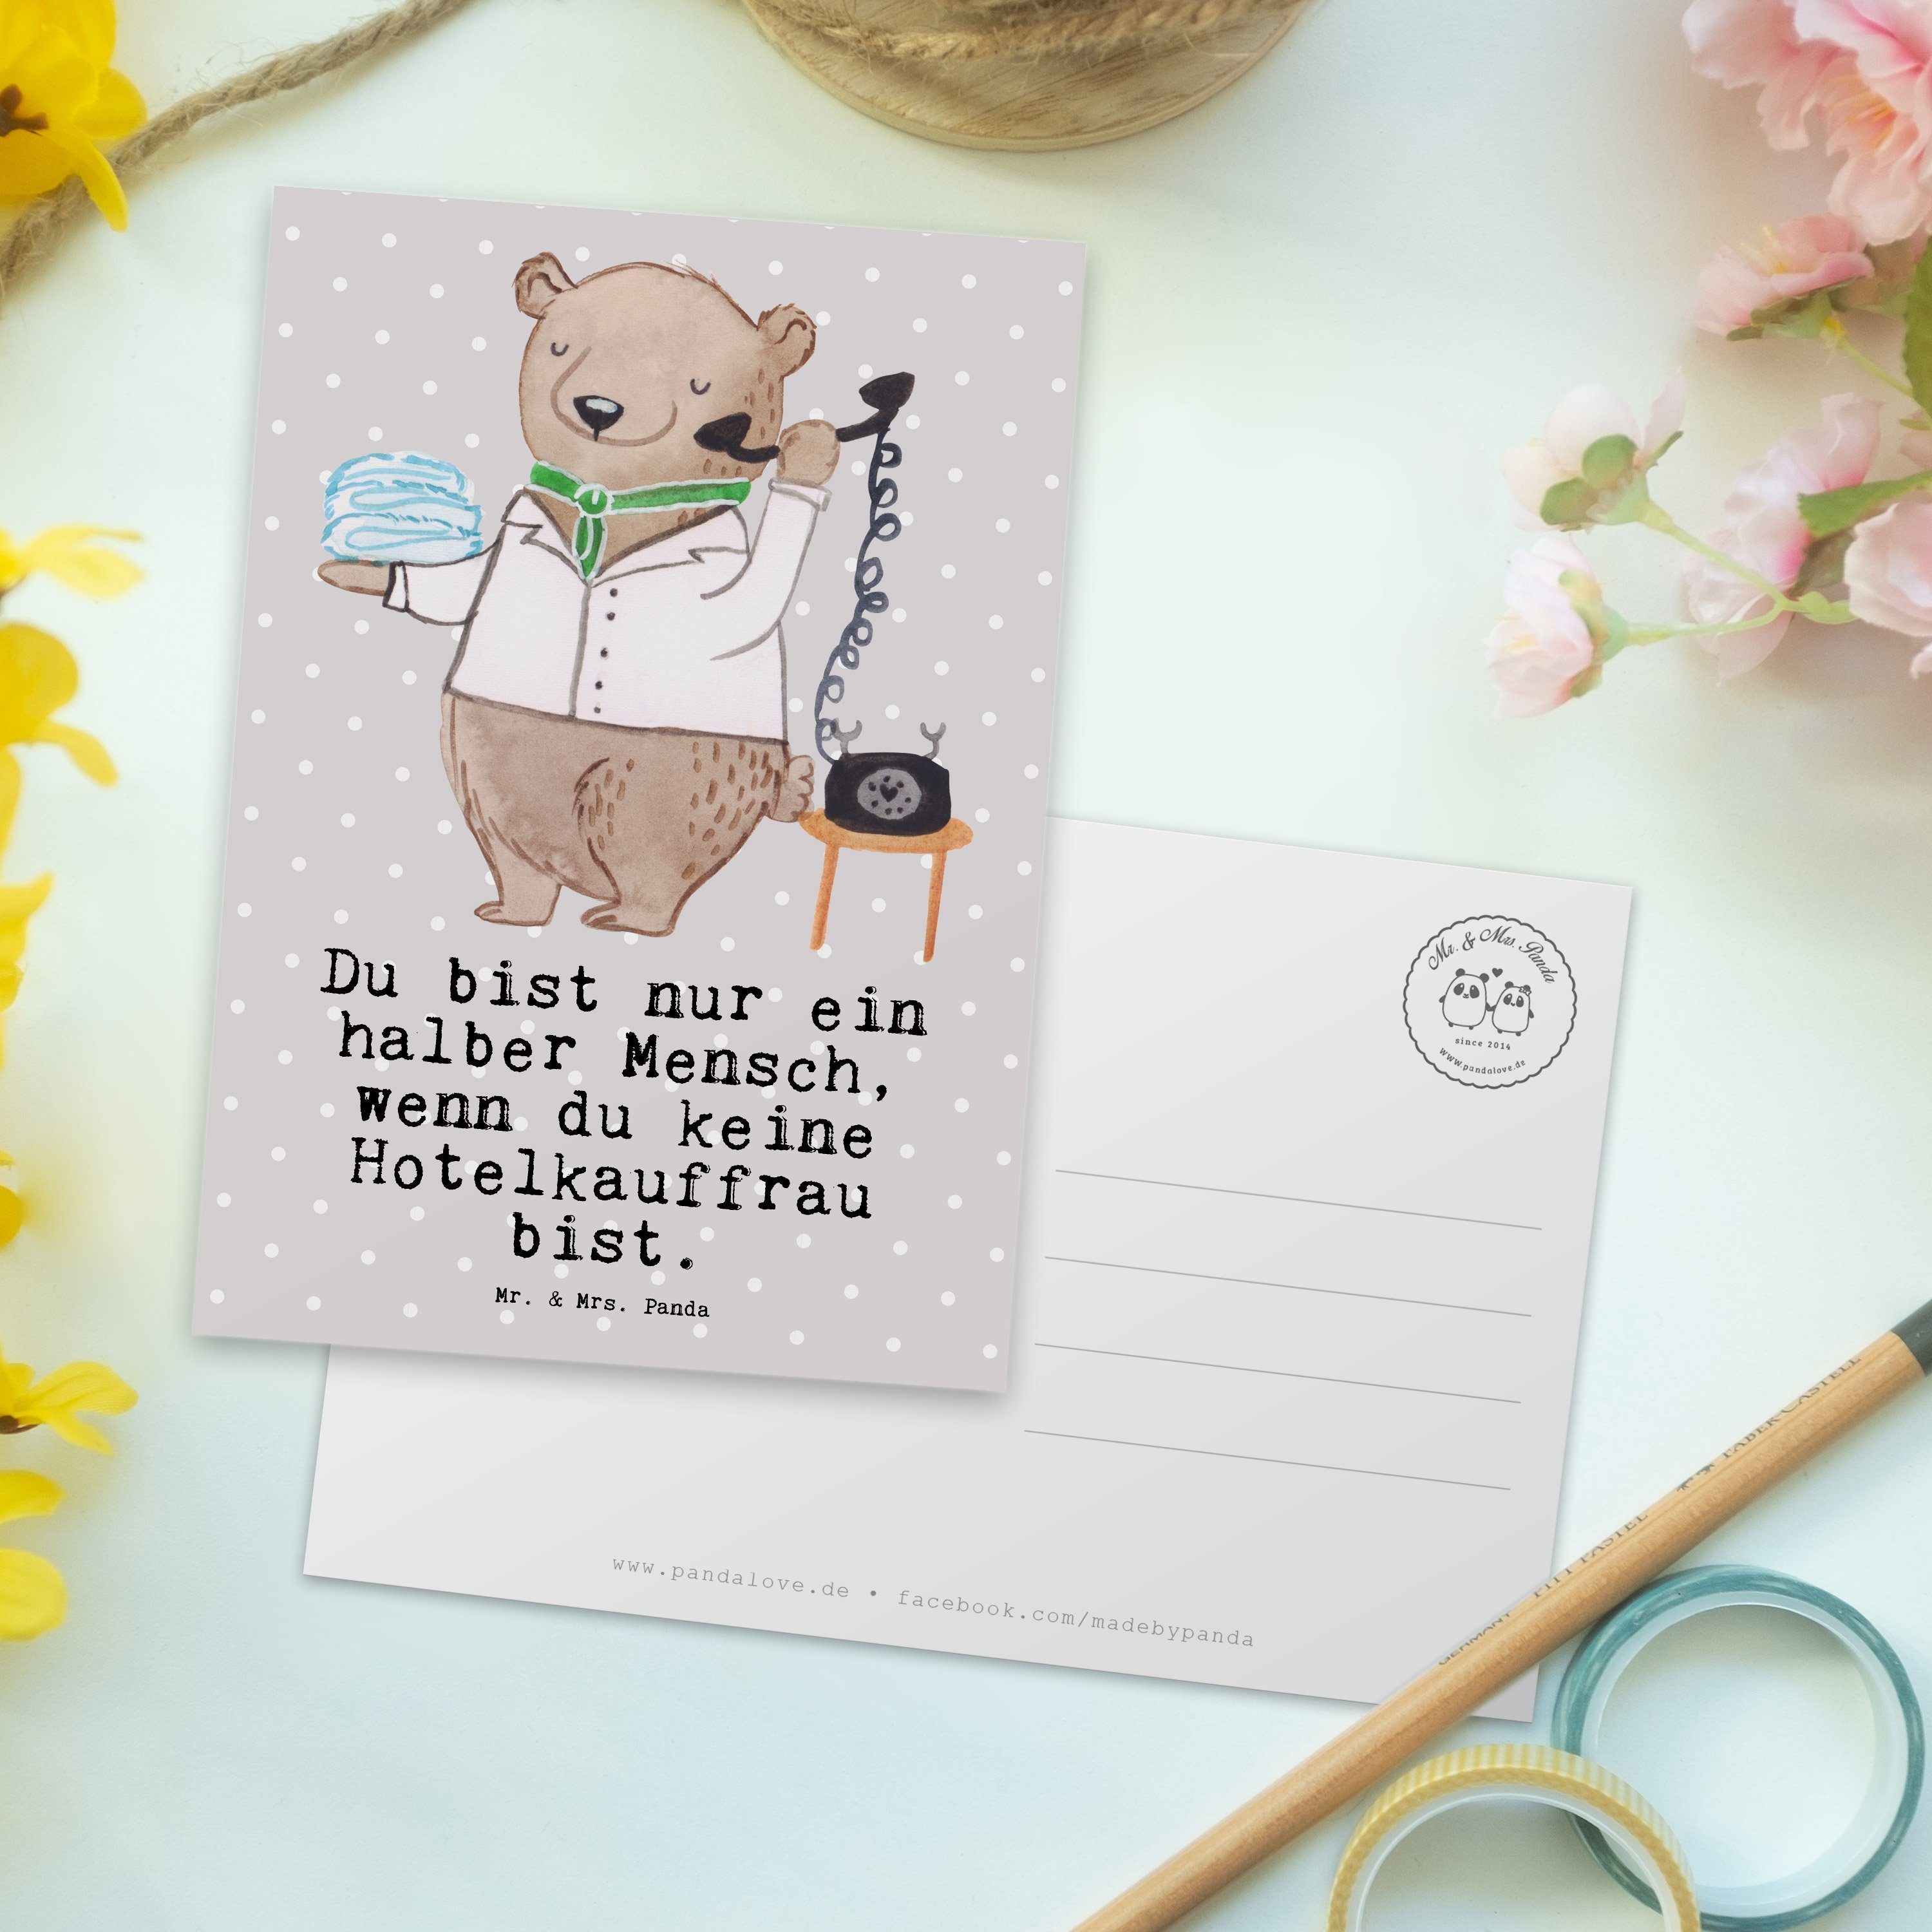 Mr. & Mrs. Panda Postkarte Hotelkauffrau mit Herz - Grau Pastell - Geschenk, Jubiläum, Dankeschö